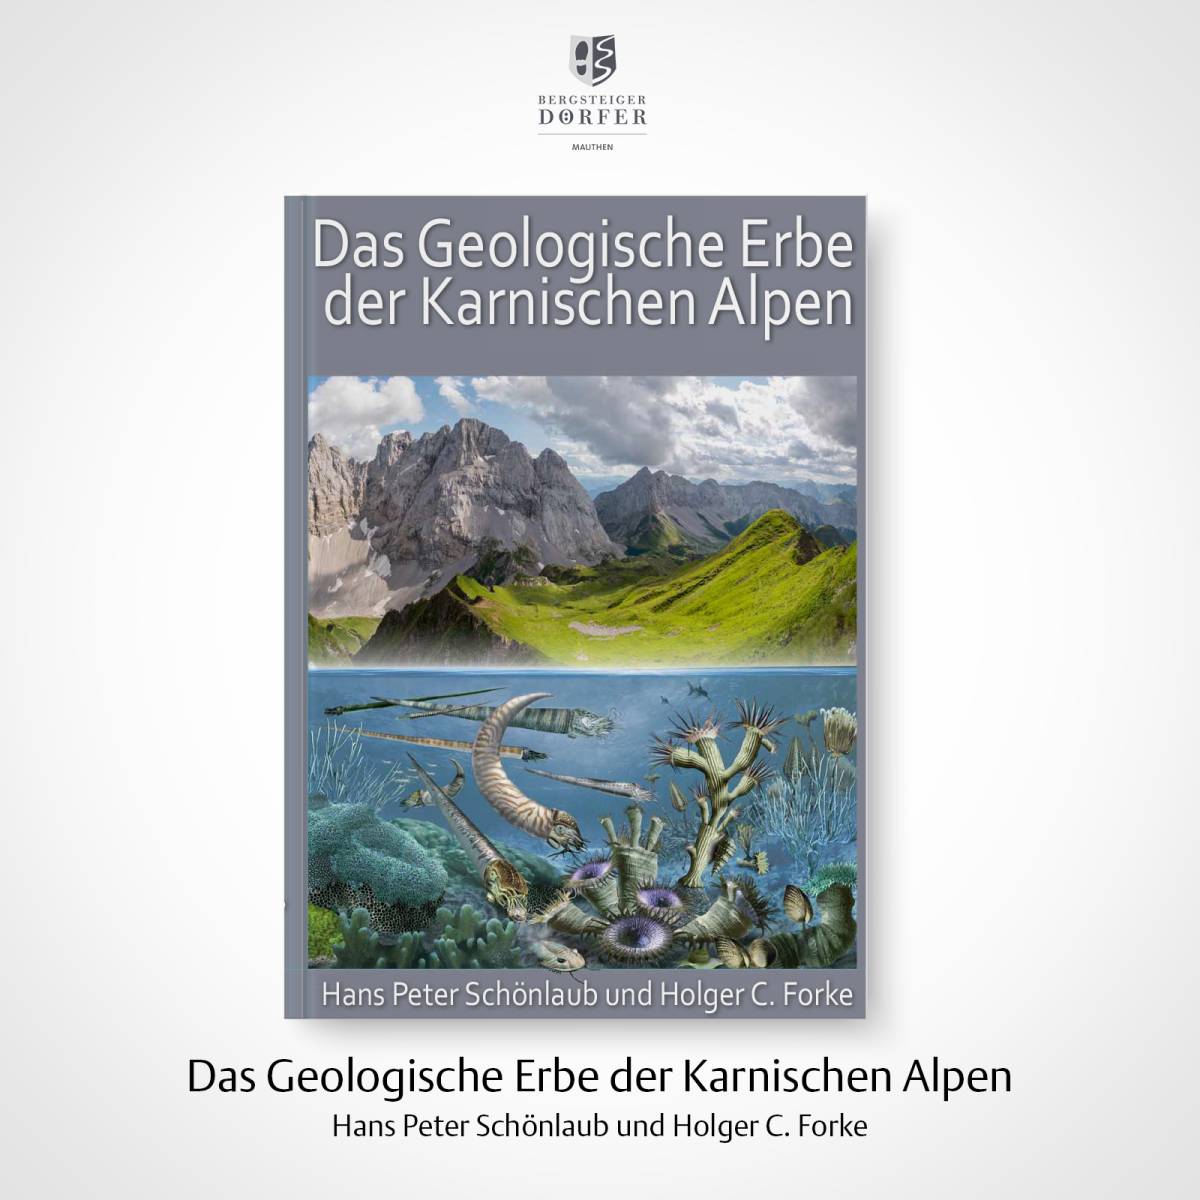 Das Geologische Erbe der Karnischen Alpen